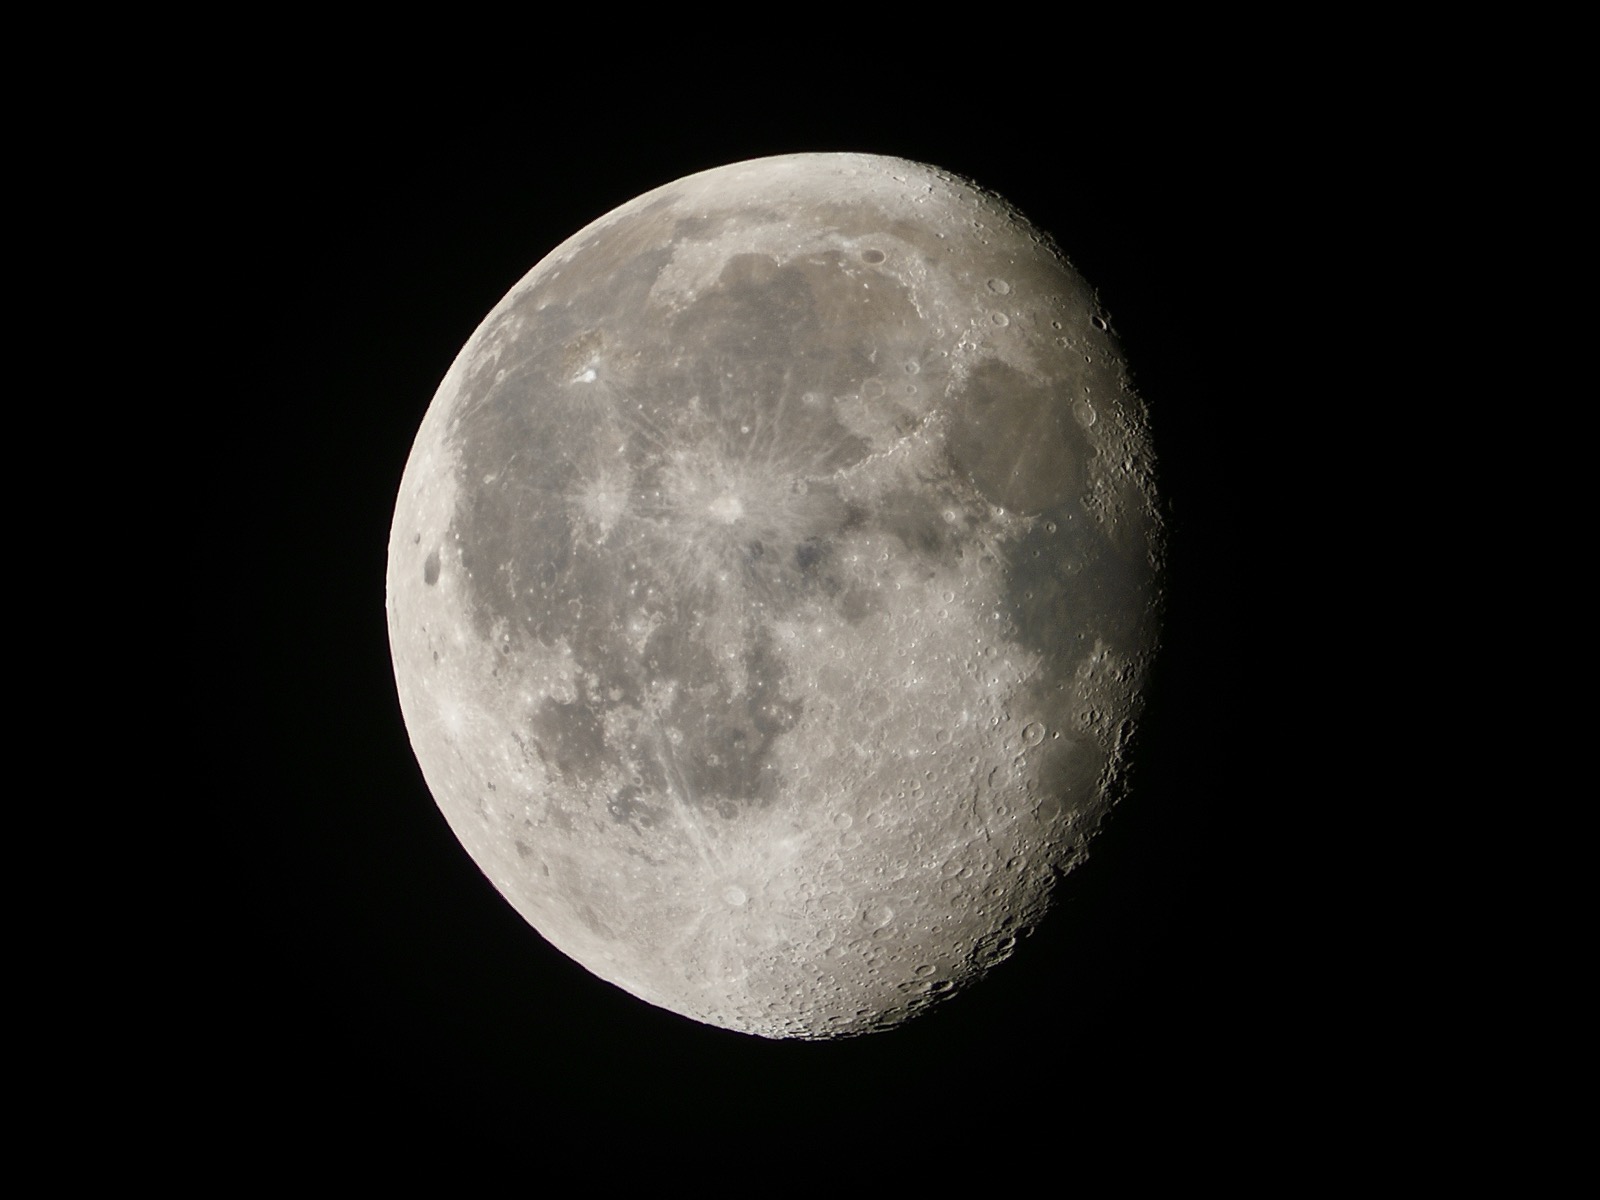 Waning gibbous moon 87% illuminated